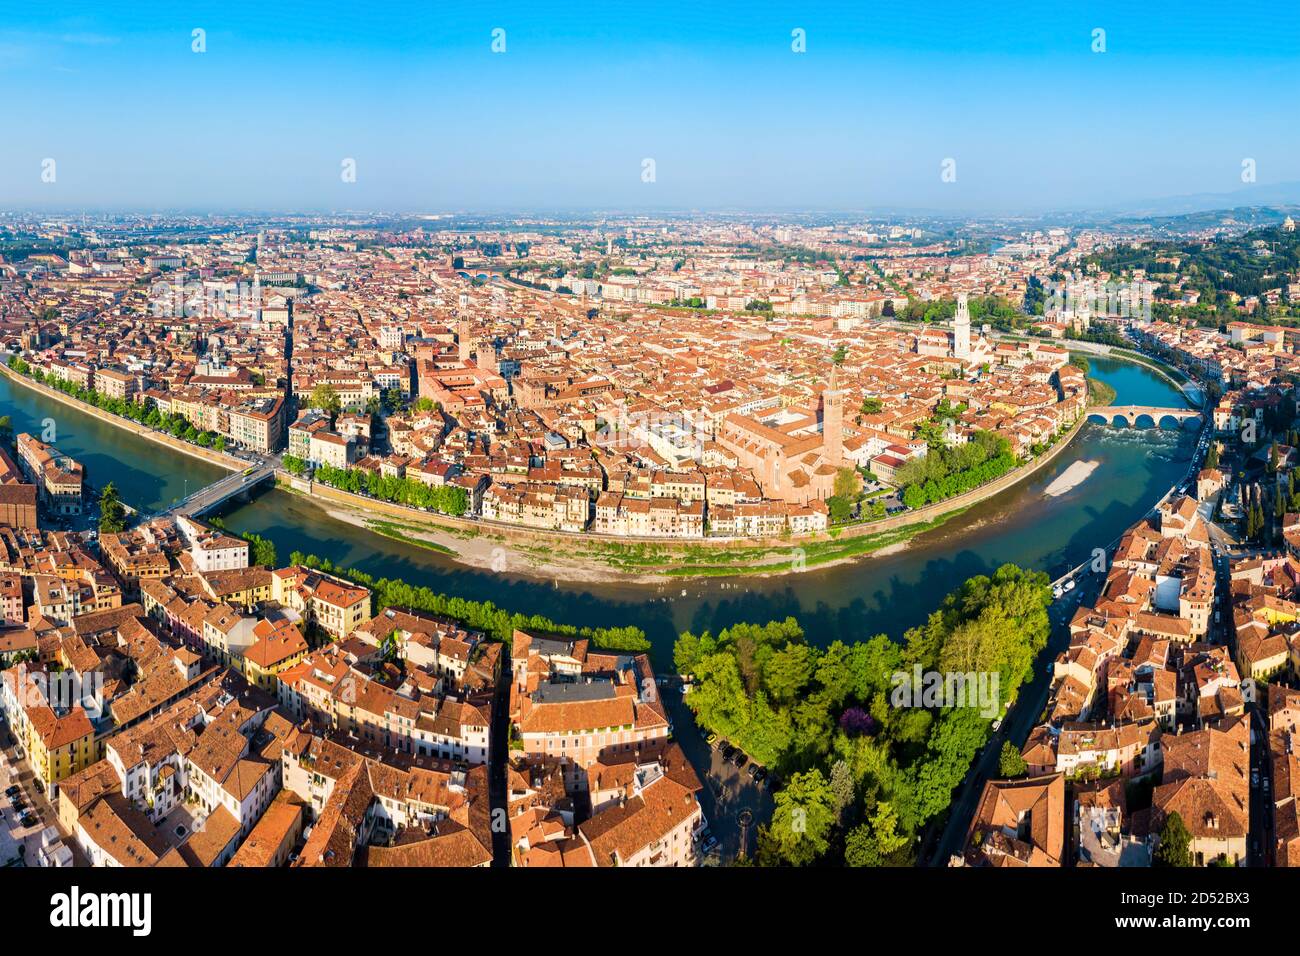 La ville de Vérone et de l'antenne fleuve Adige vue panoramique dans la région Vénétie en Italie Banque D'Images